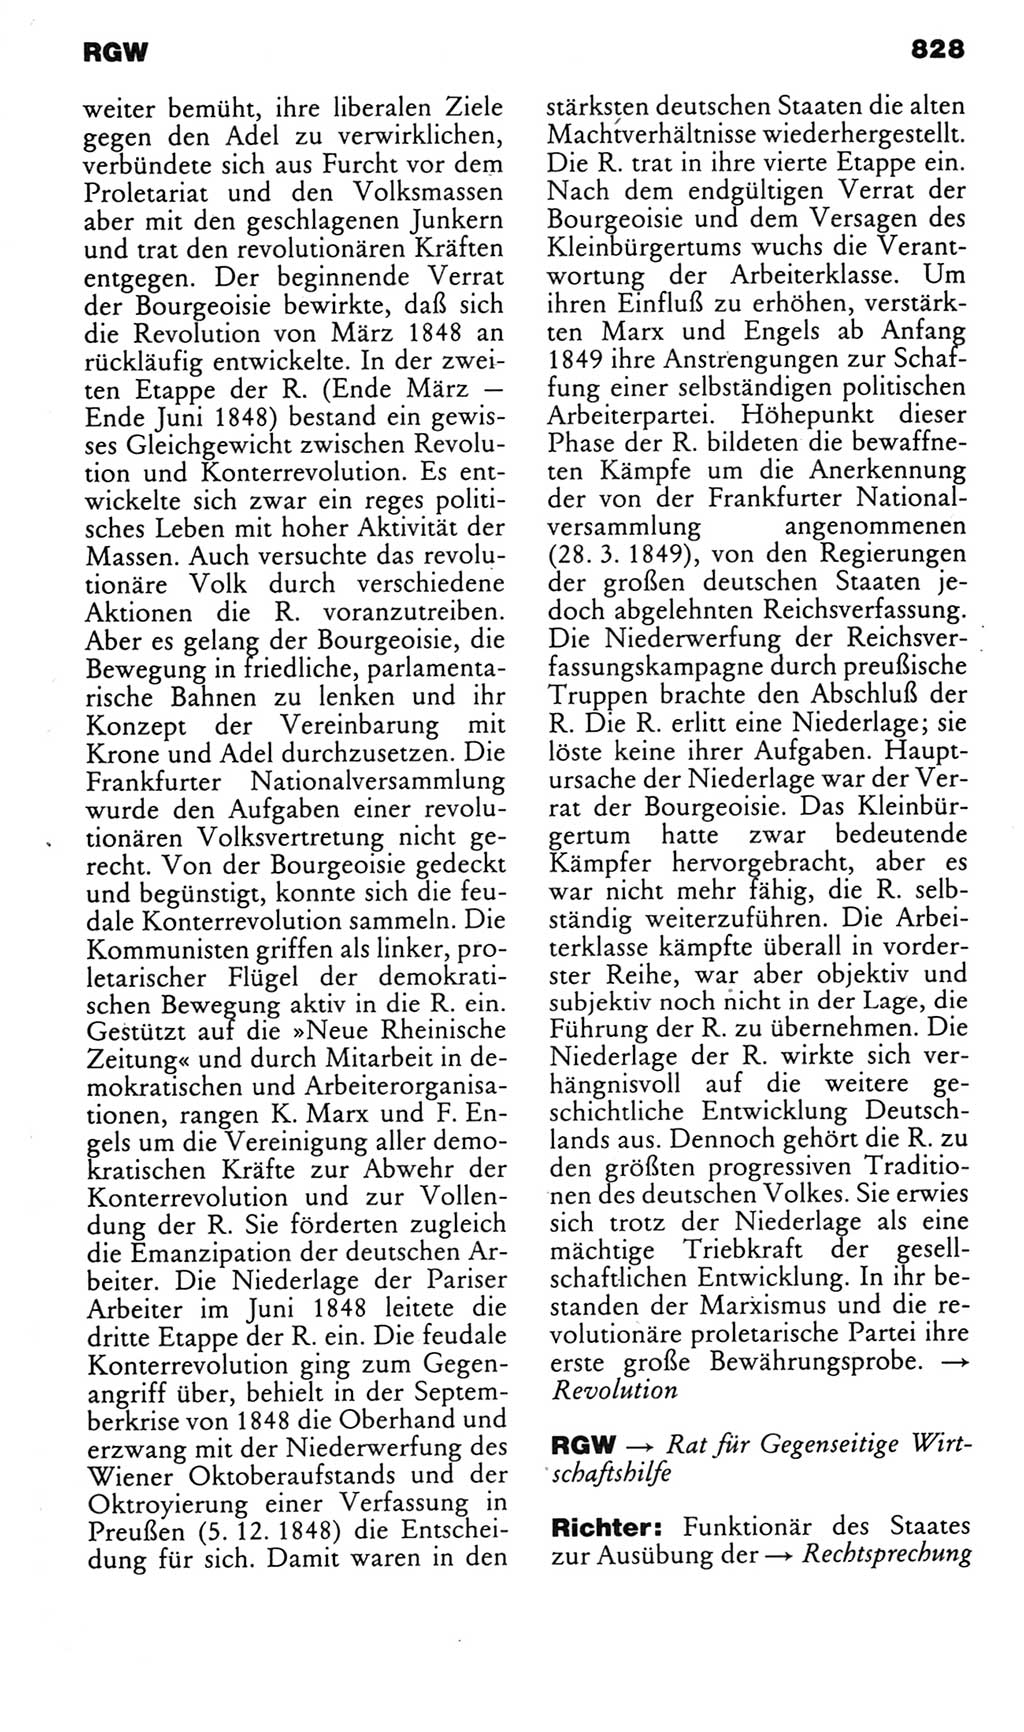 Kleines politisches Wörterbuch [Deutsche Demokratische Republik (DDR)] 1985, Seite 828 (Kl. pol. Wb. DDR 1985, S. 828)